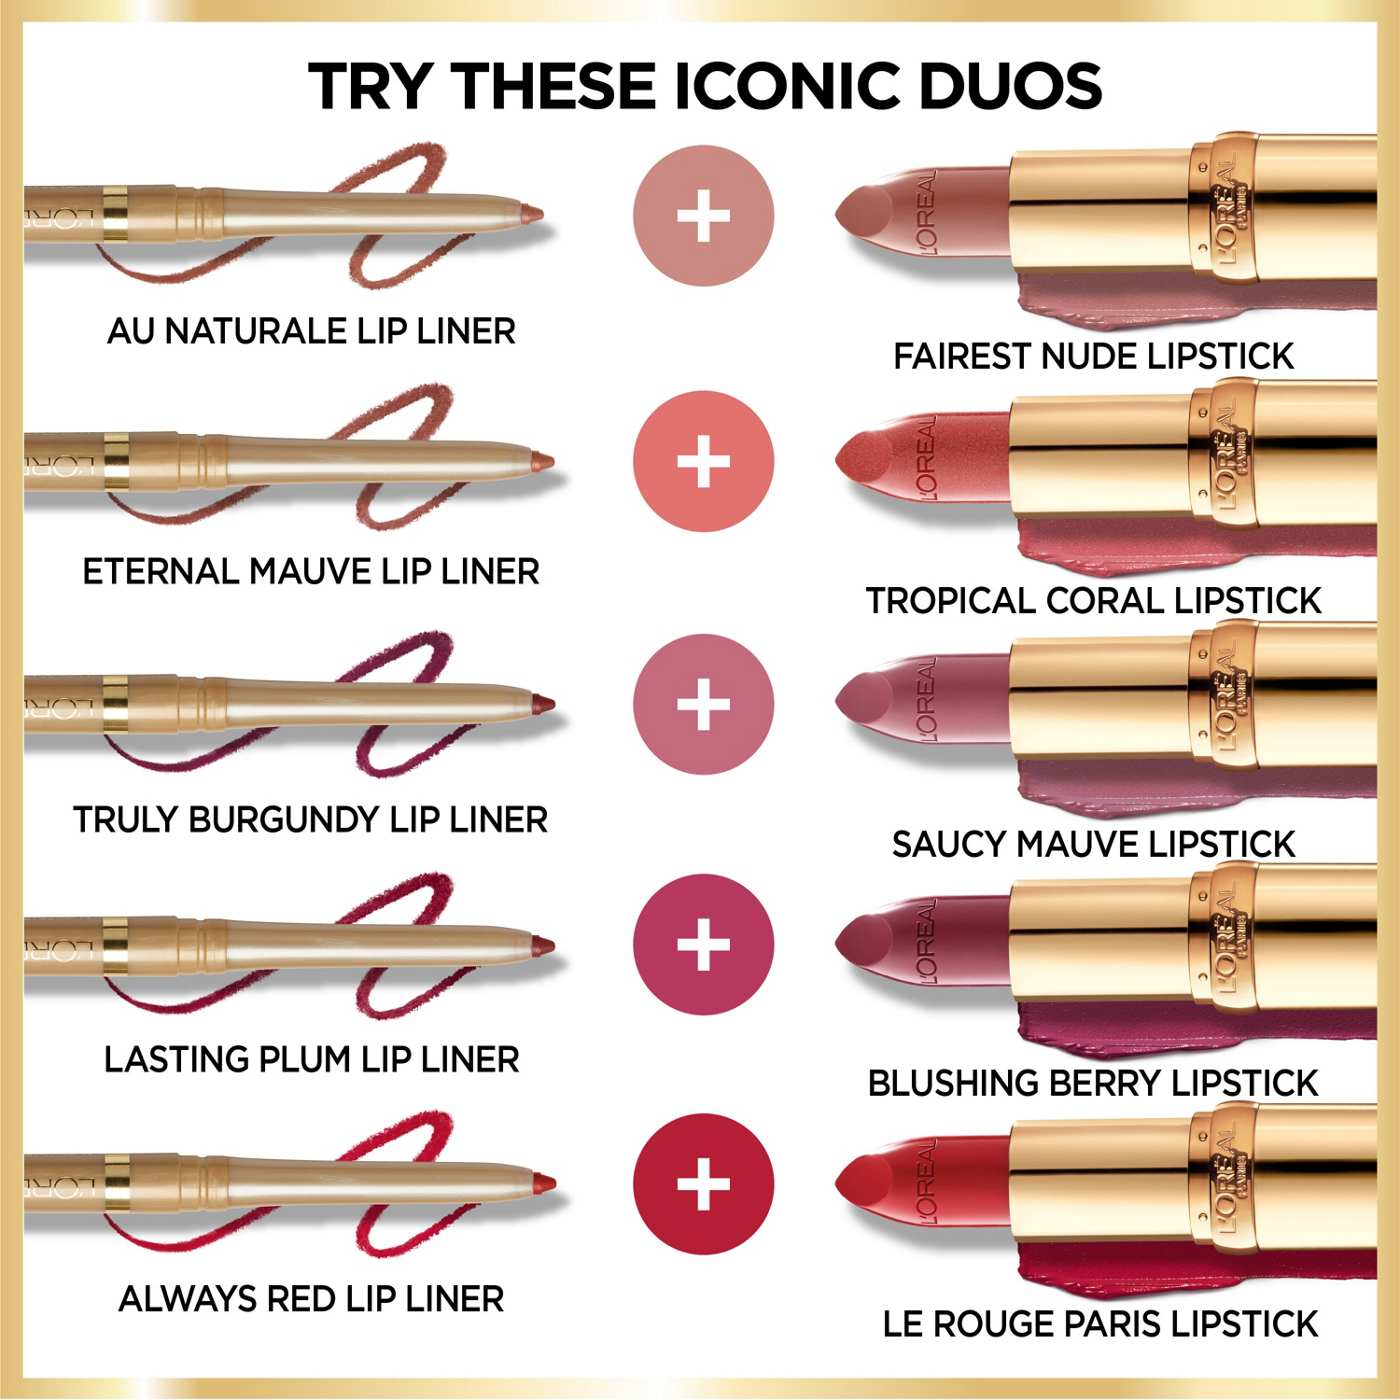 L'Oréal Paris Colour Riche Original Satin Lipstick - Toasted Almond; image 5 of 5